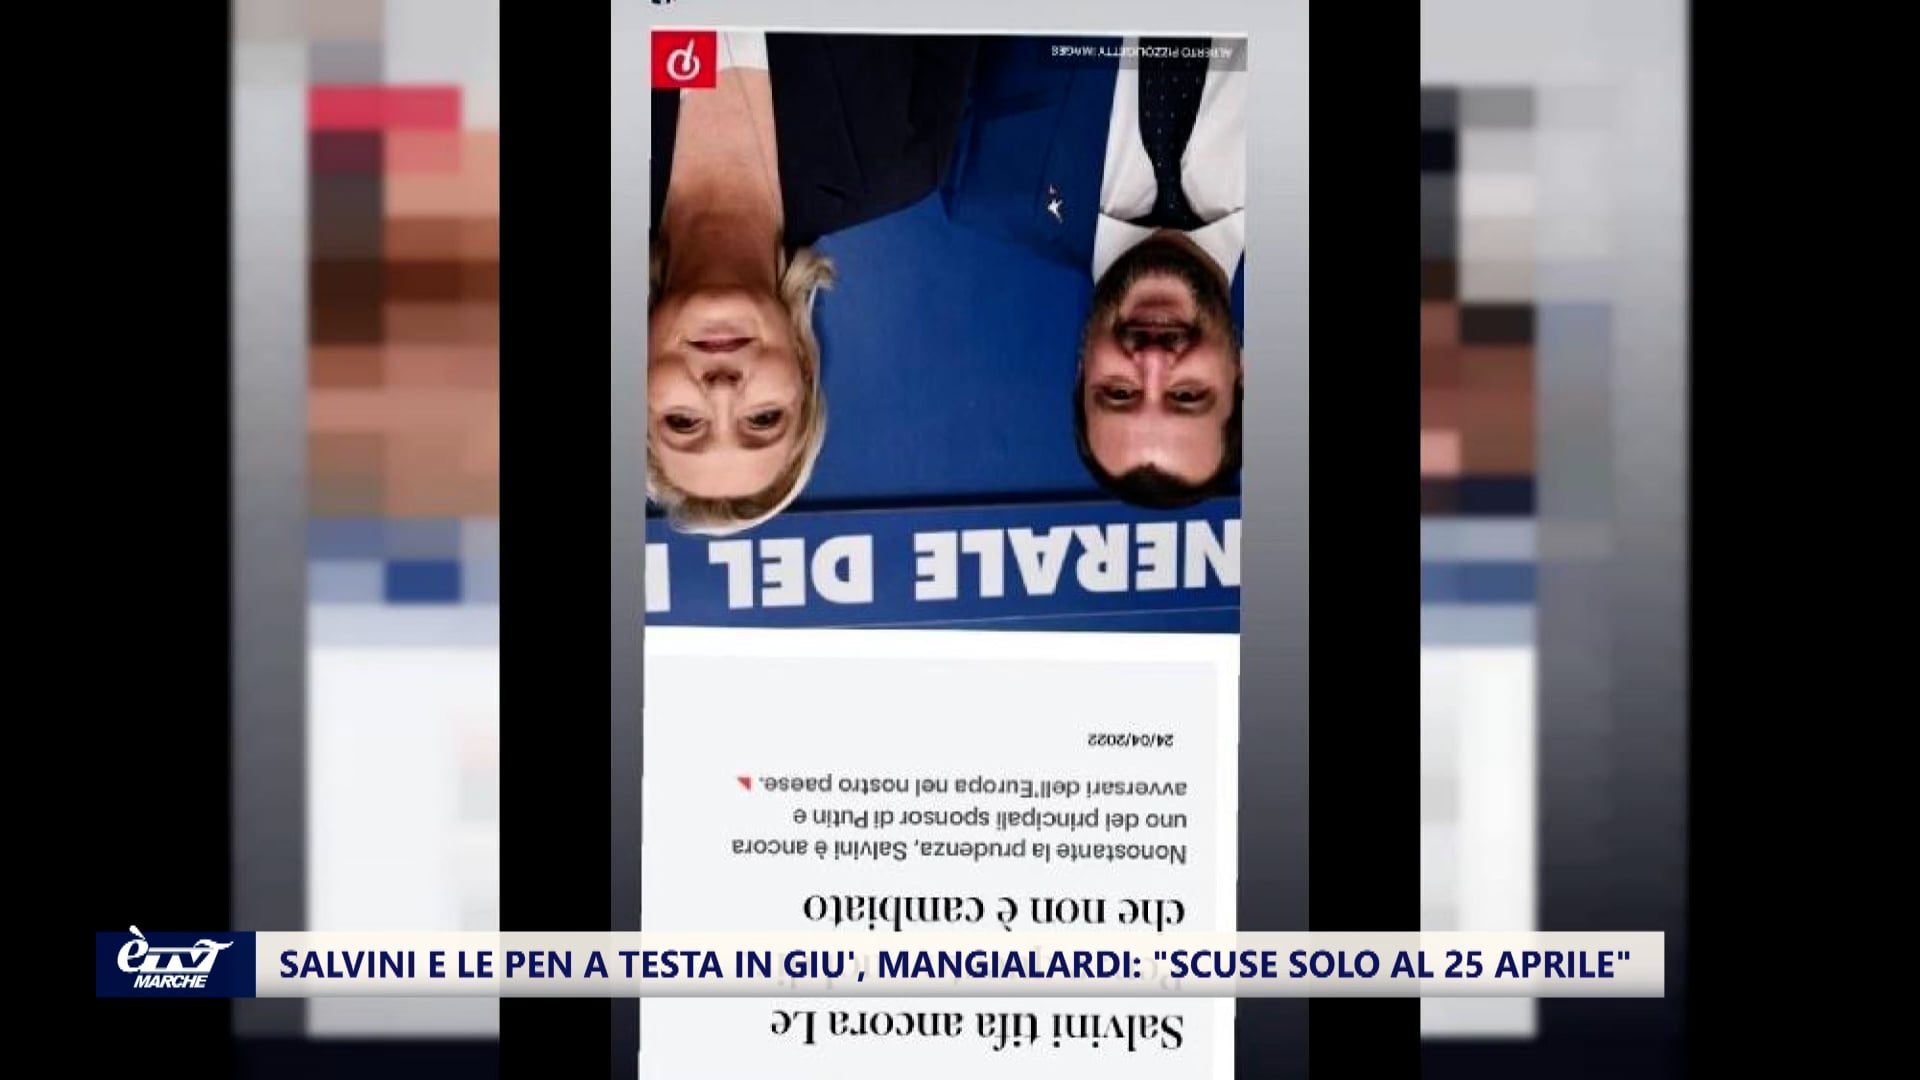 Il caso di Salvini e Le Pen a testa in giù, Mangialardi: 